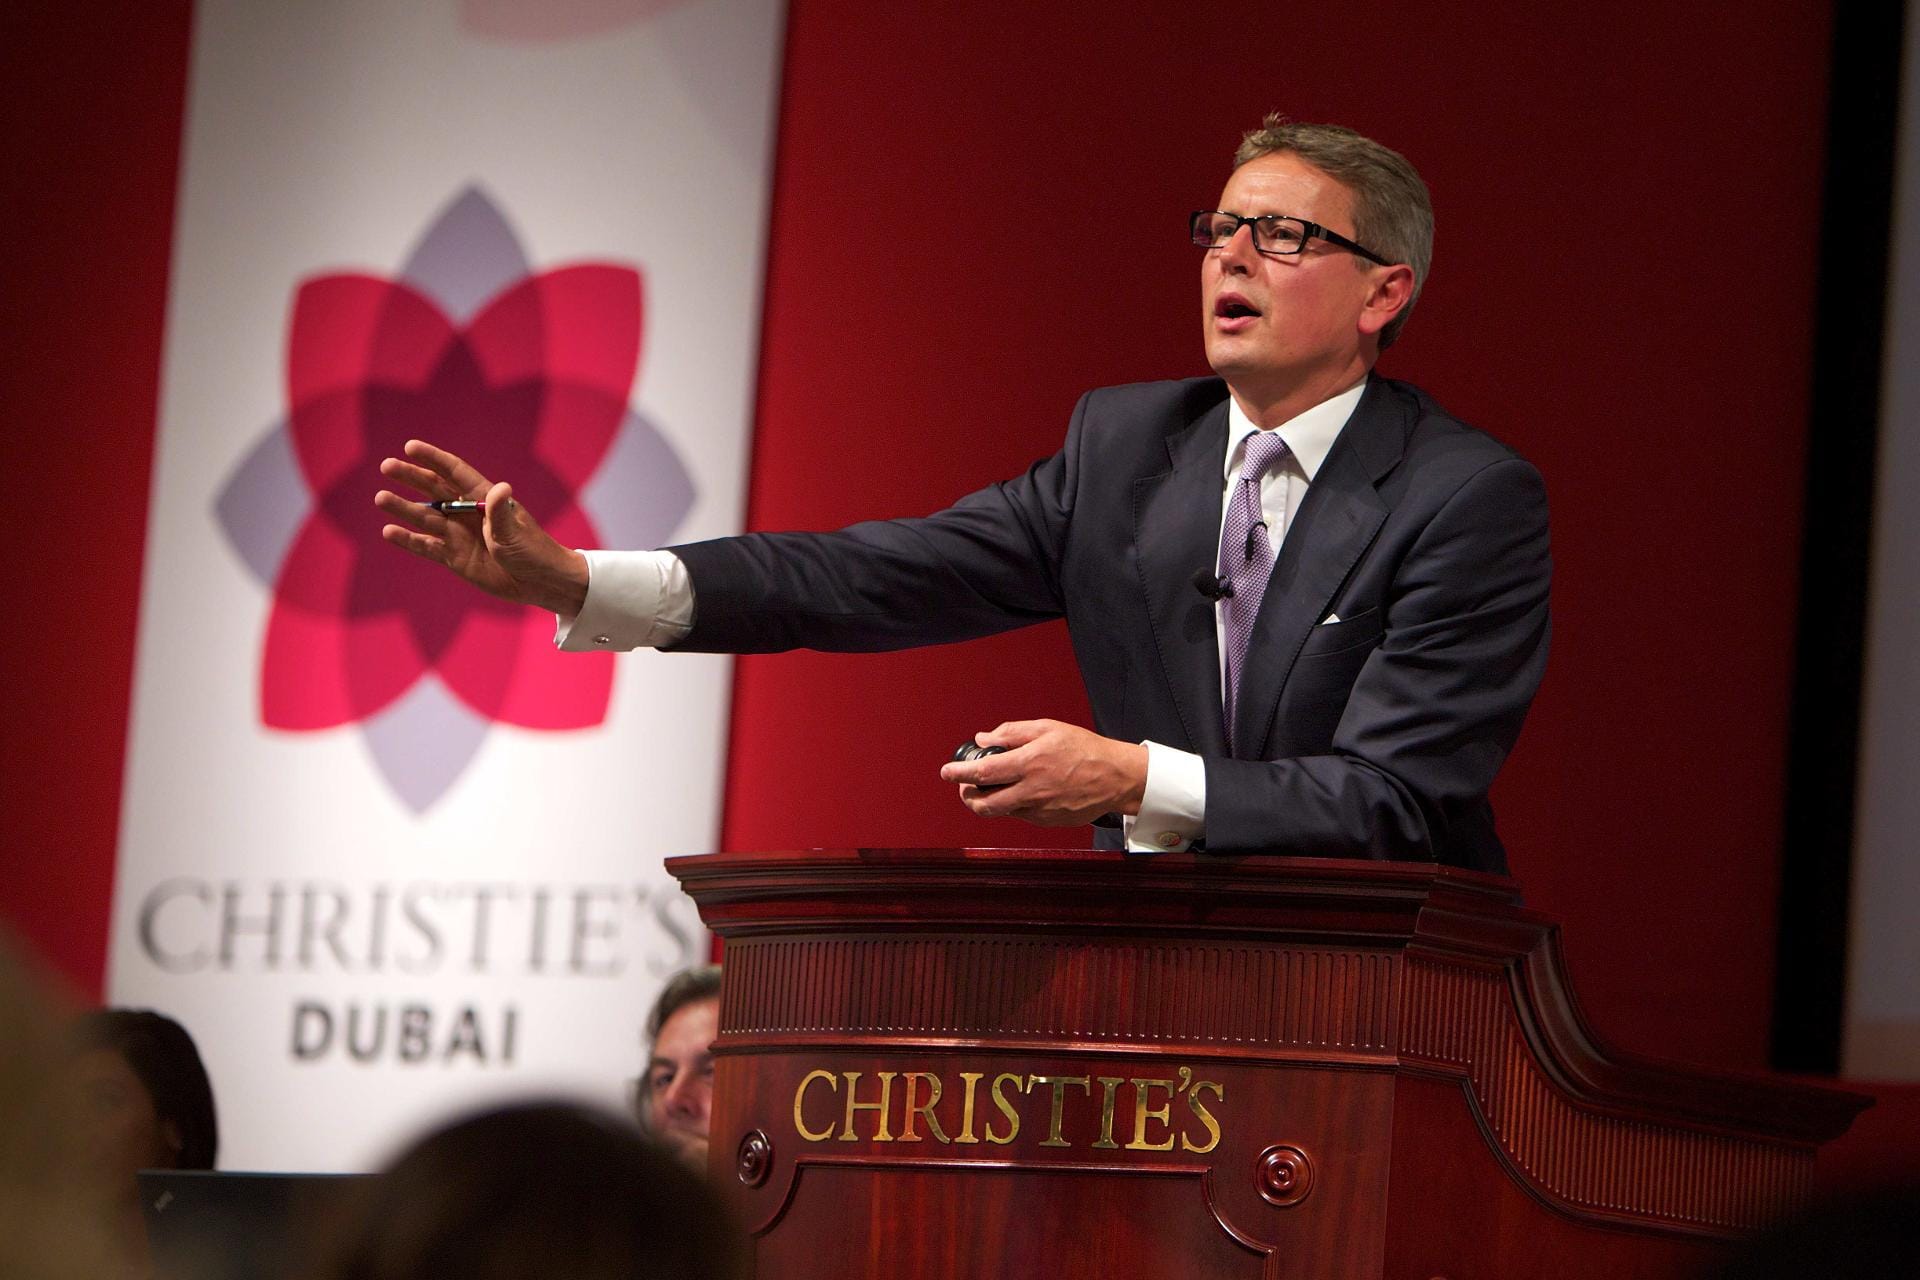 Das berühmte Auktionshaus Christie's ist heute ein globaler Konzern. Hier sehen wir Jussi Pylkkänen, Christie's Global President, bei einer Auktion in Dubai.